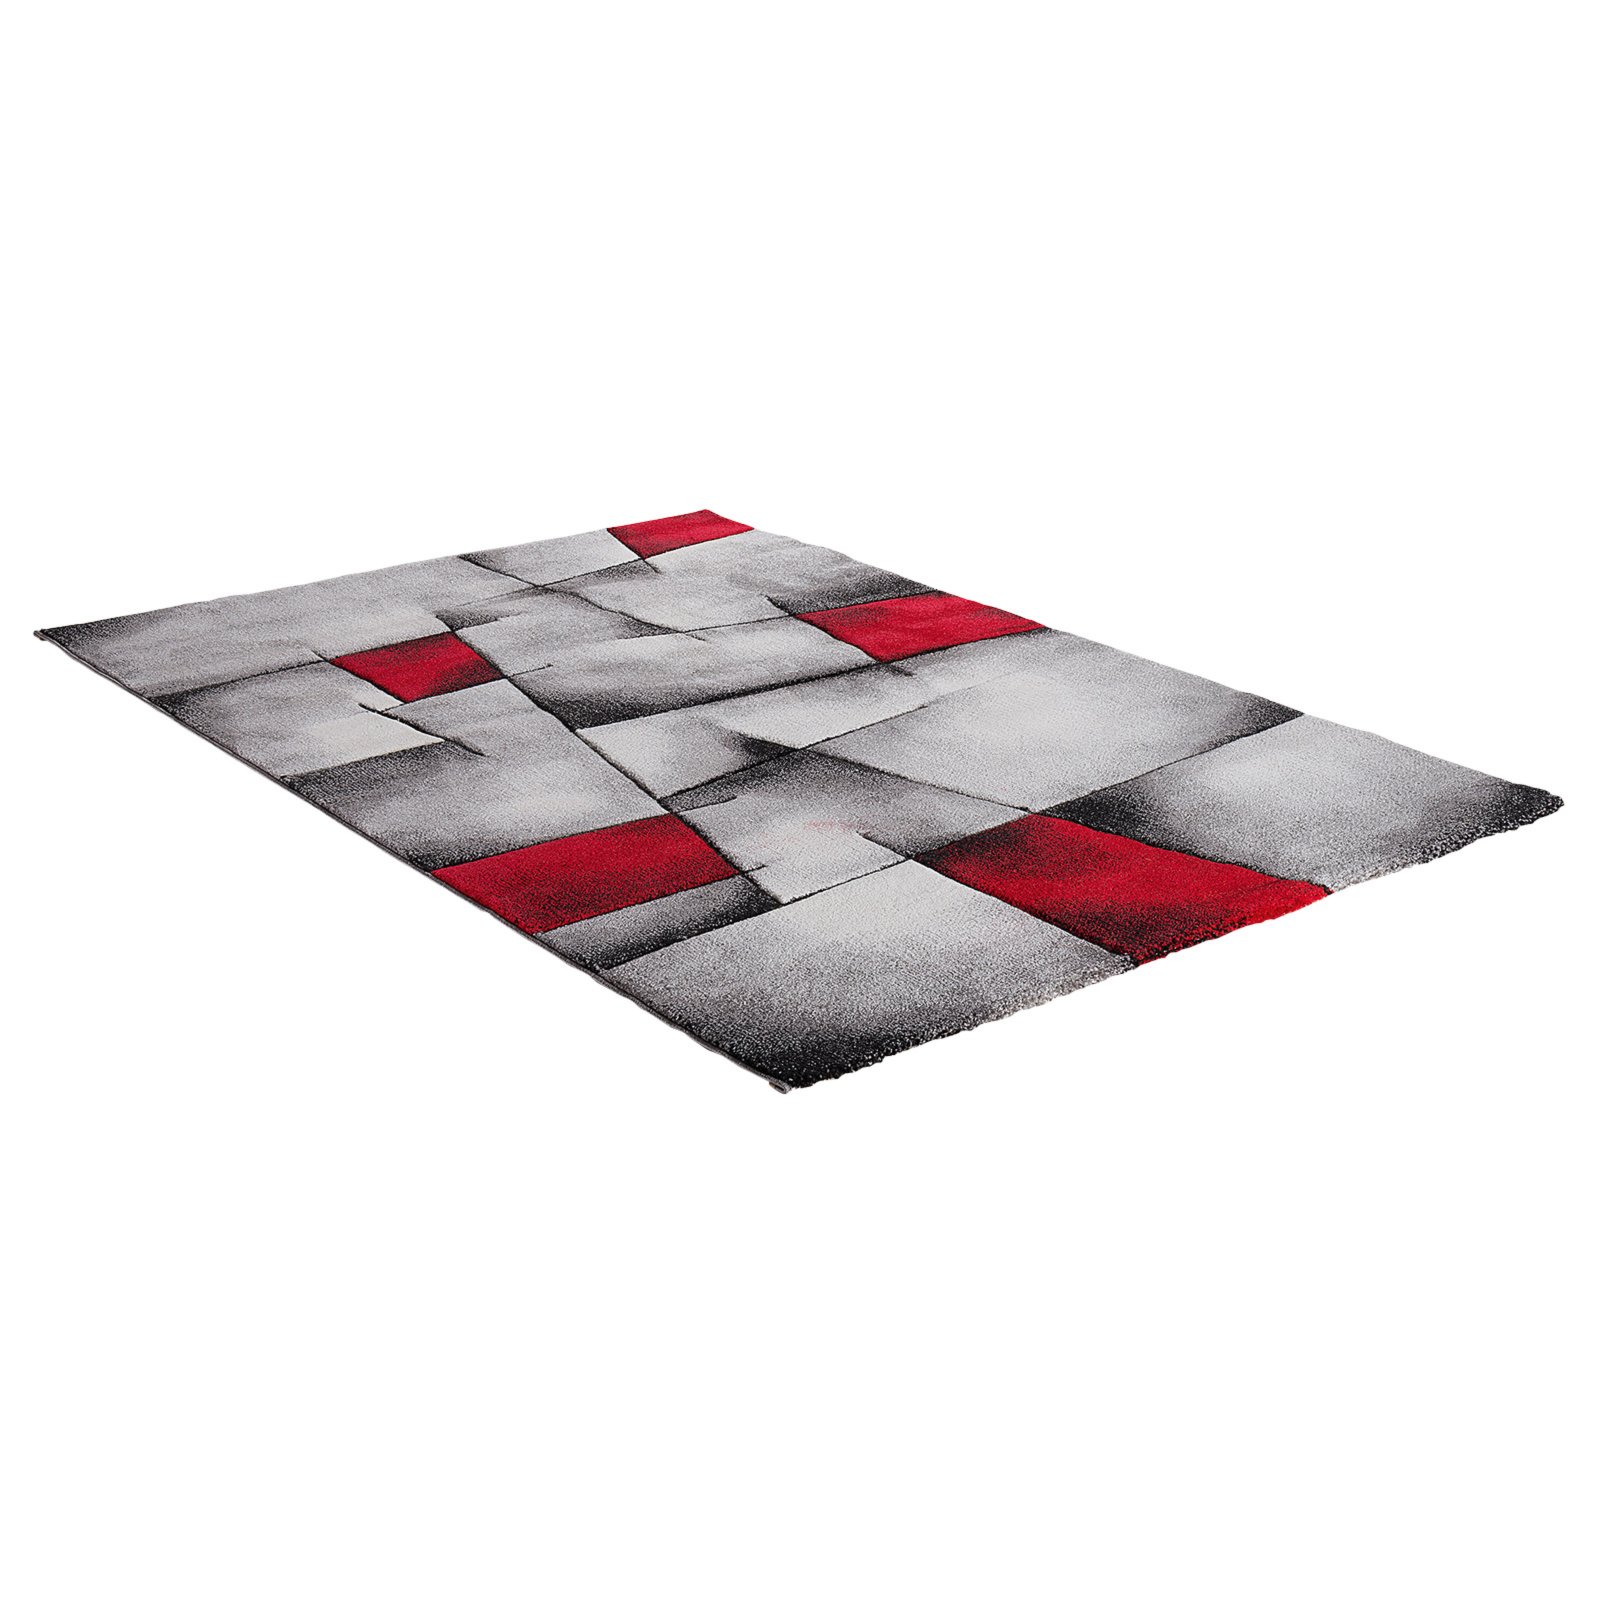 Frisee-Teppich - grau-rot - 120x170 cm | Online bei ROLLER kaufen